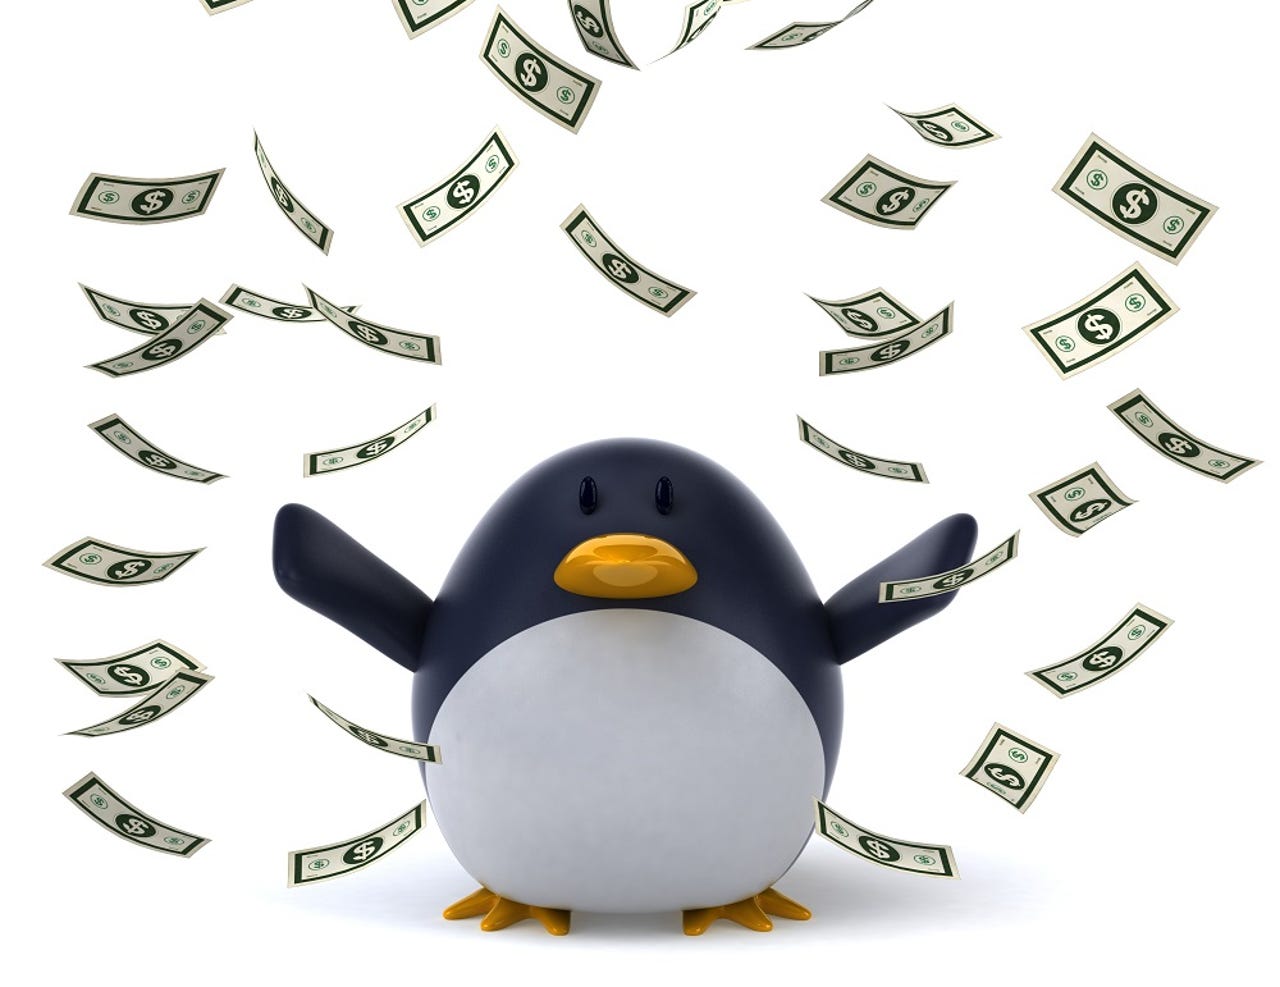 linux-open-source-money-penguin.jpg